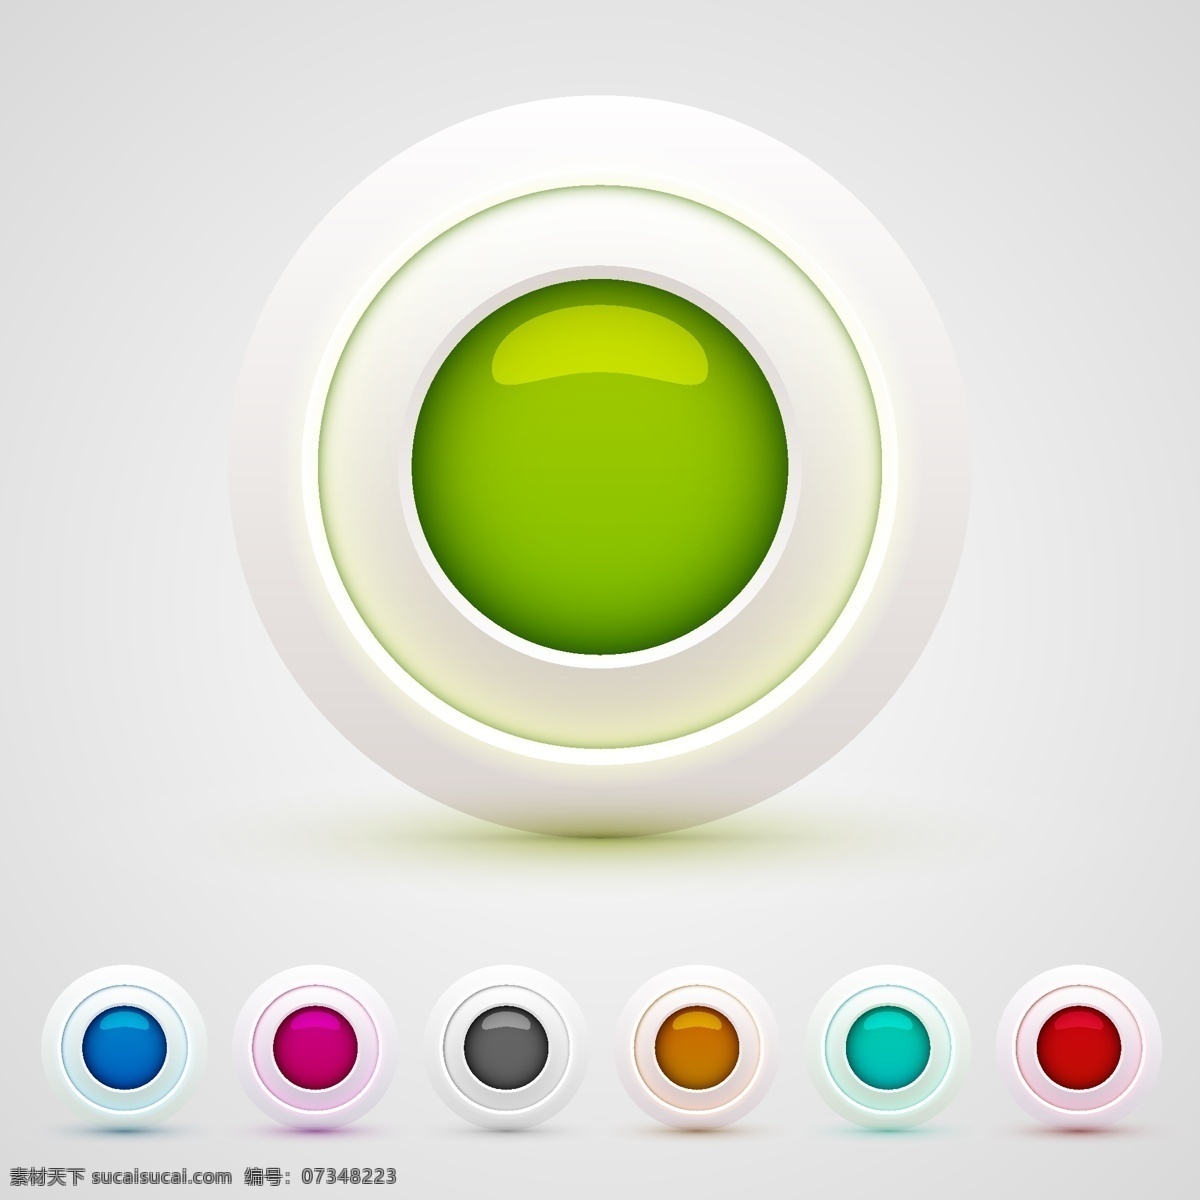 彩色圆网按钮 圆 按钮 网页 丰富多彩 现代 网络按钮 导航 圆形 设置 推送 收集 着色 白色